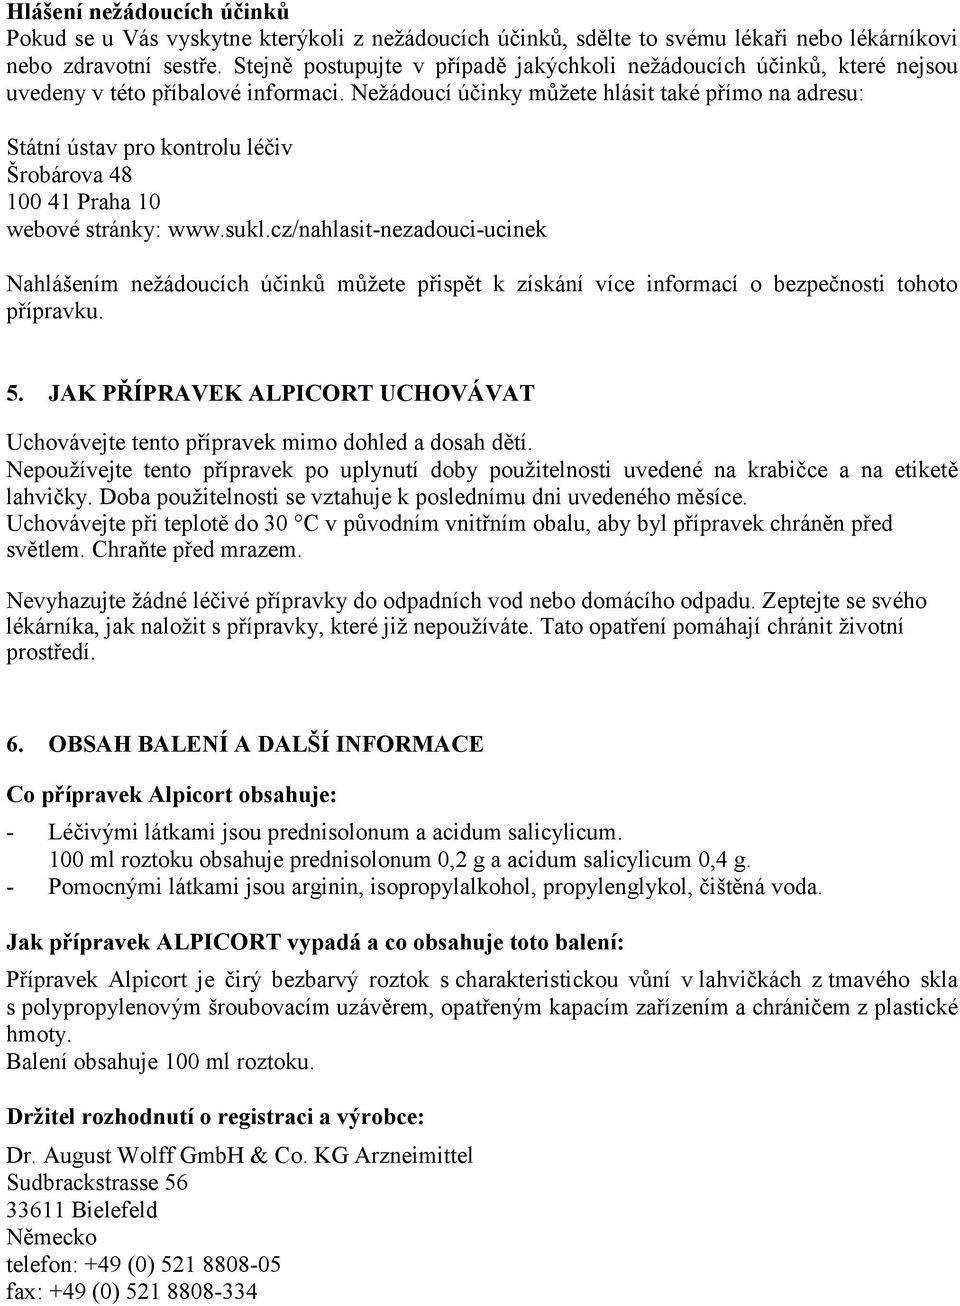 Nežádoucí účinky můžete hlásit také přímo na adresu: Státní ústav pro kontrolu léčiv Šrobárova 48 100 41 Praha 10 webové stránky: www.sukl.